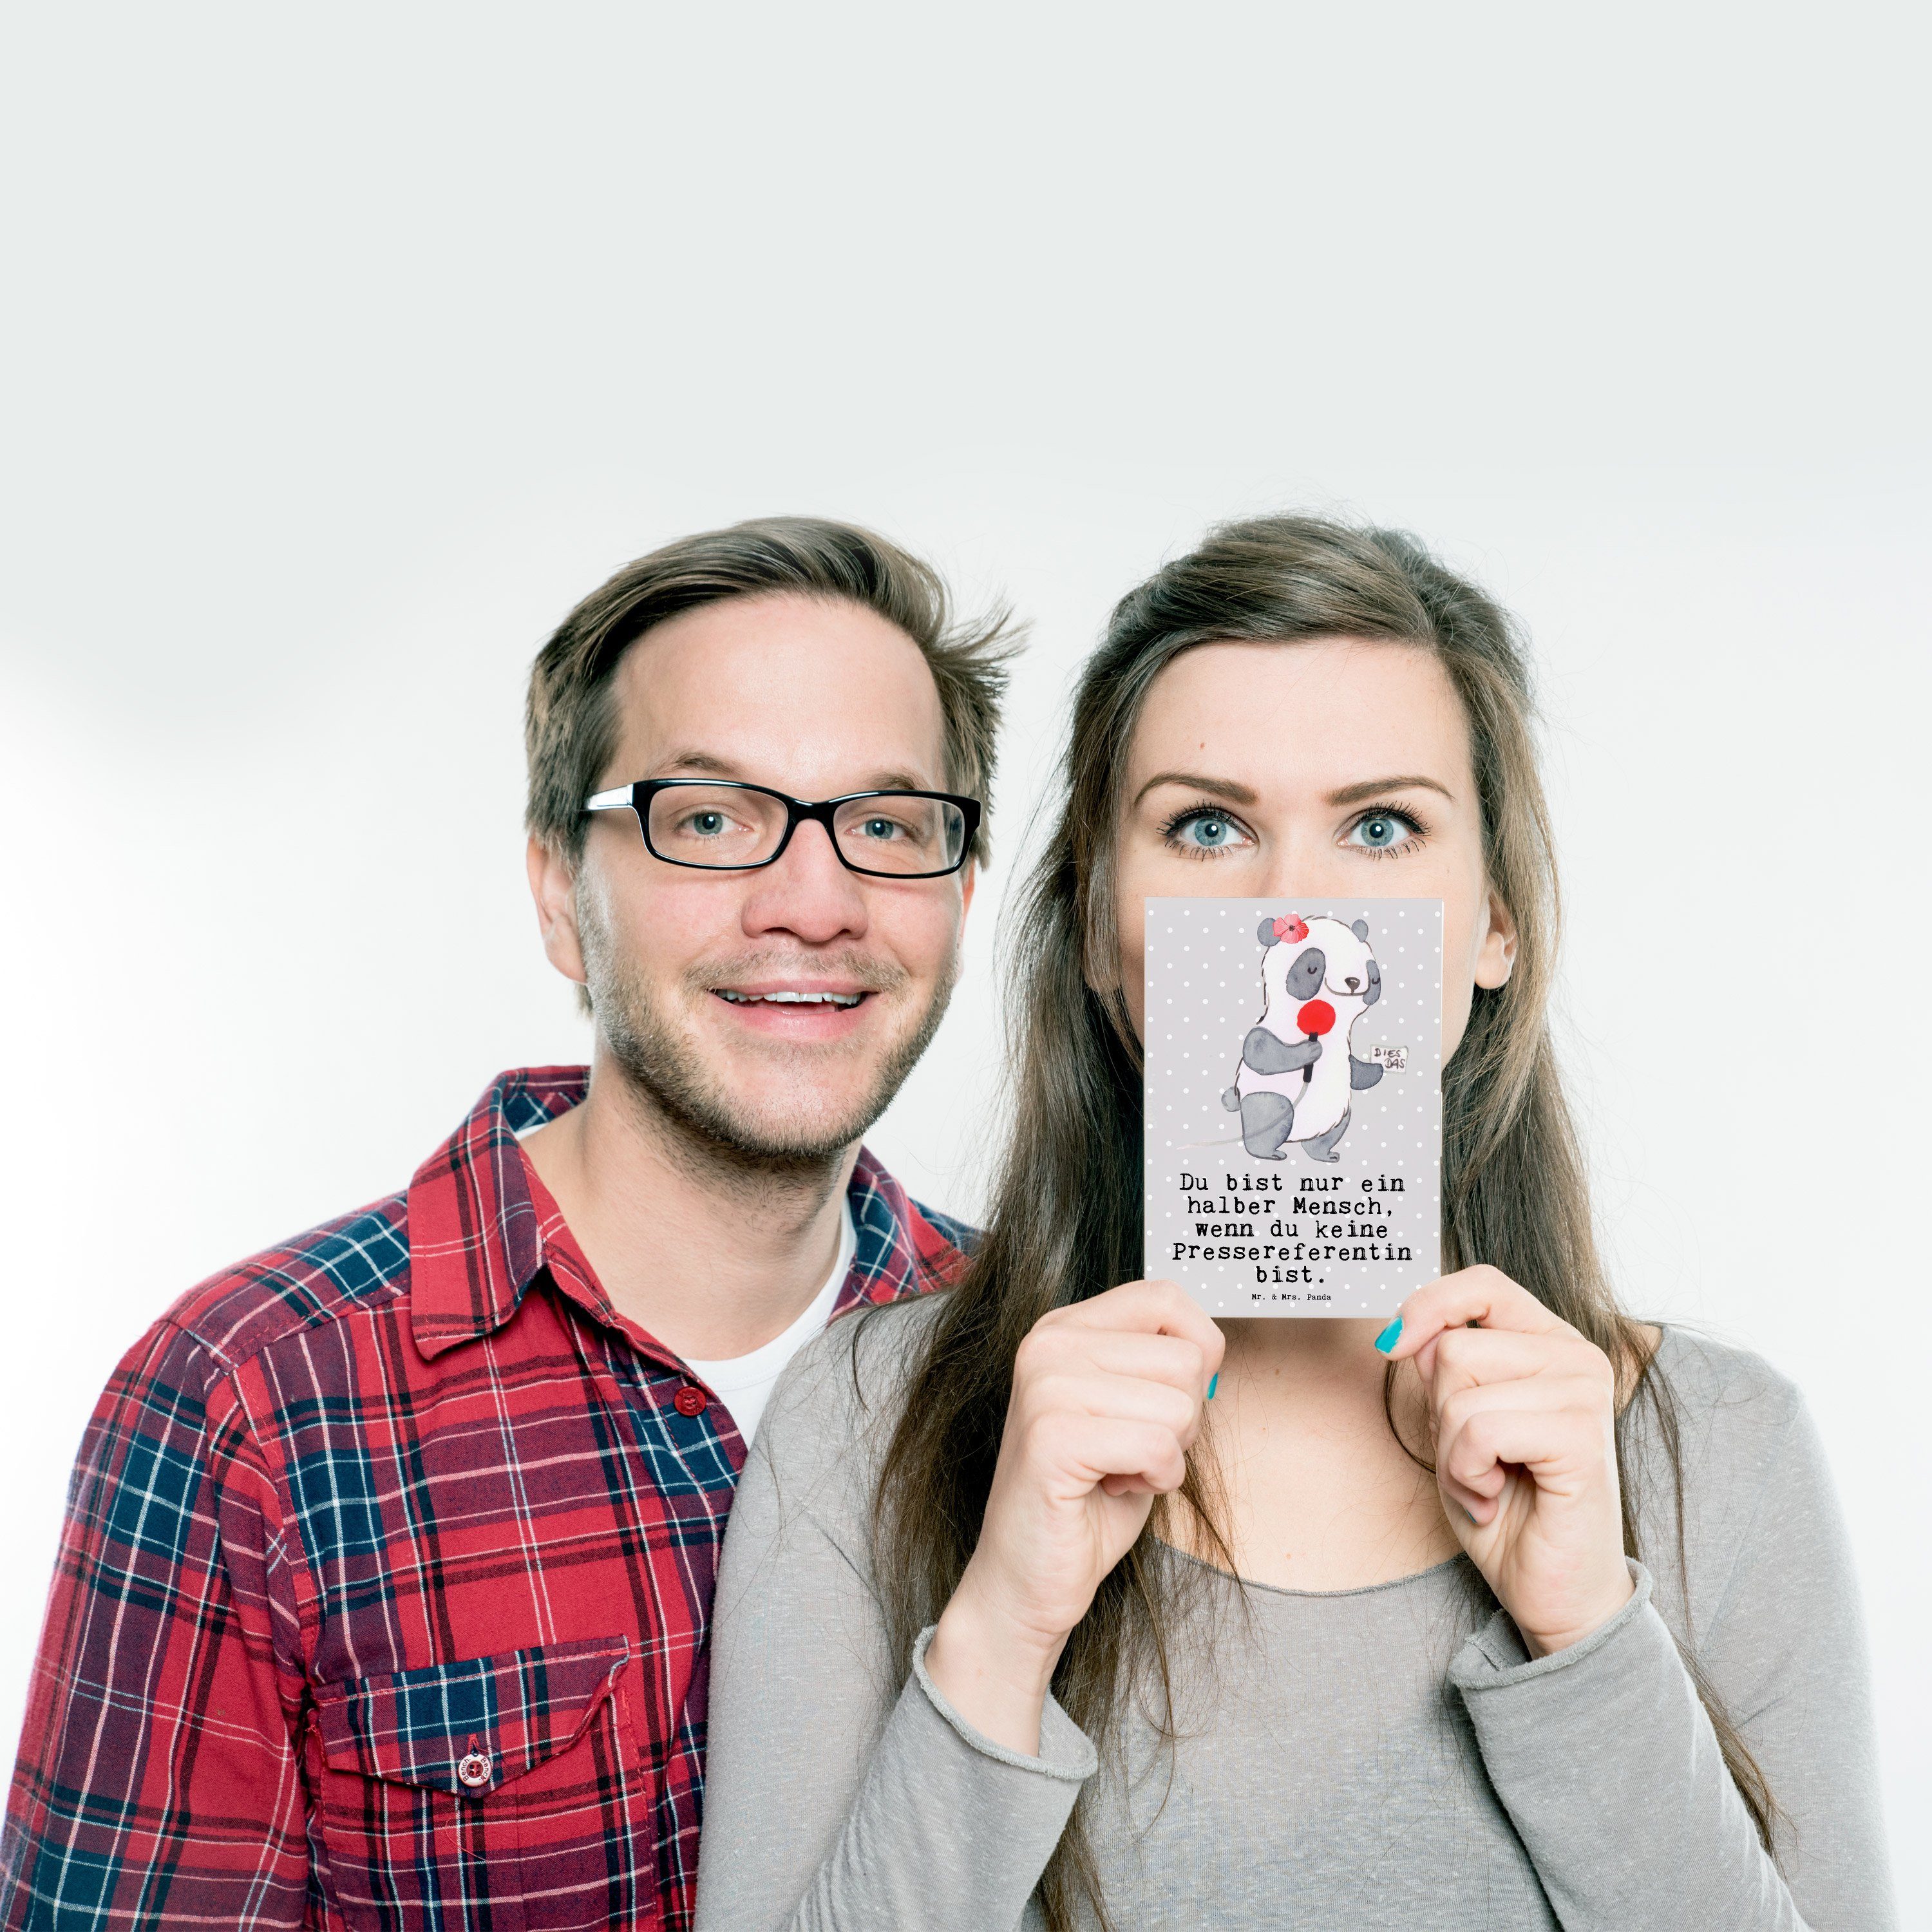 Mr. & Mrs. Panda Geschenk, Pressereferentin Pastell - Beruf, Schenken mit Postkarte Grau - Herz